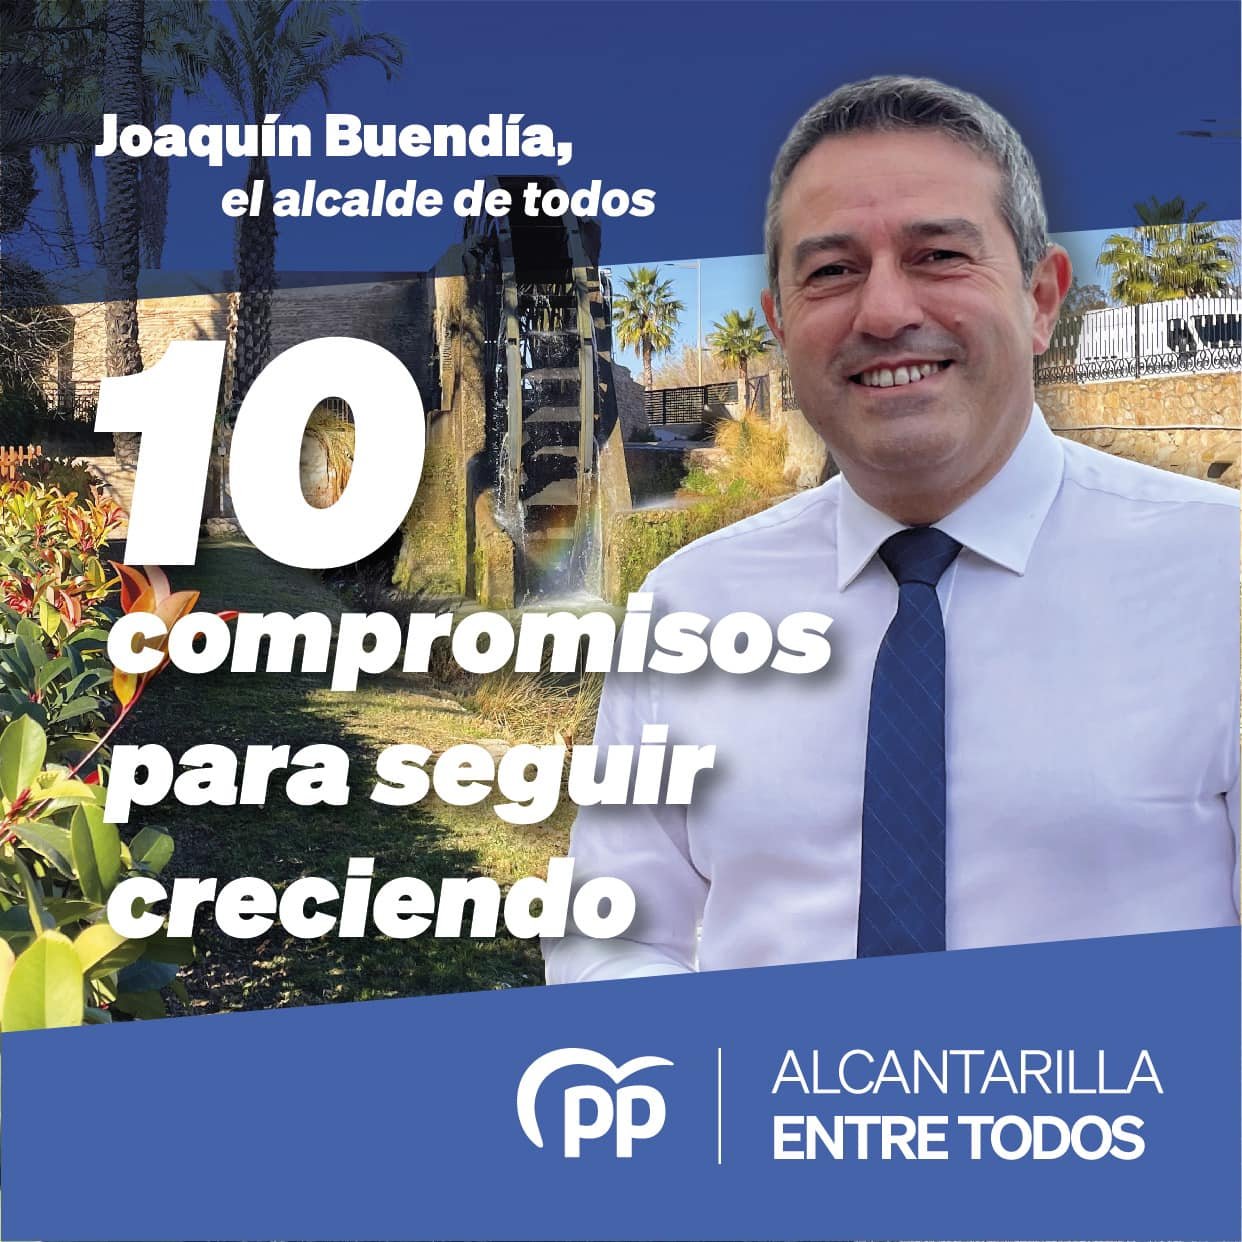 En este momento estás viendo Joaquín Buendía Gómez construyamos juntos el futuro de Alcantarilla!